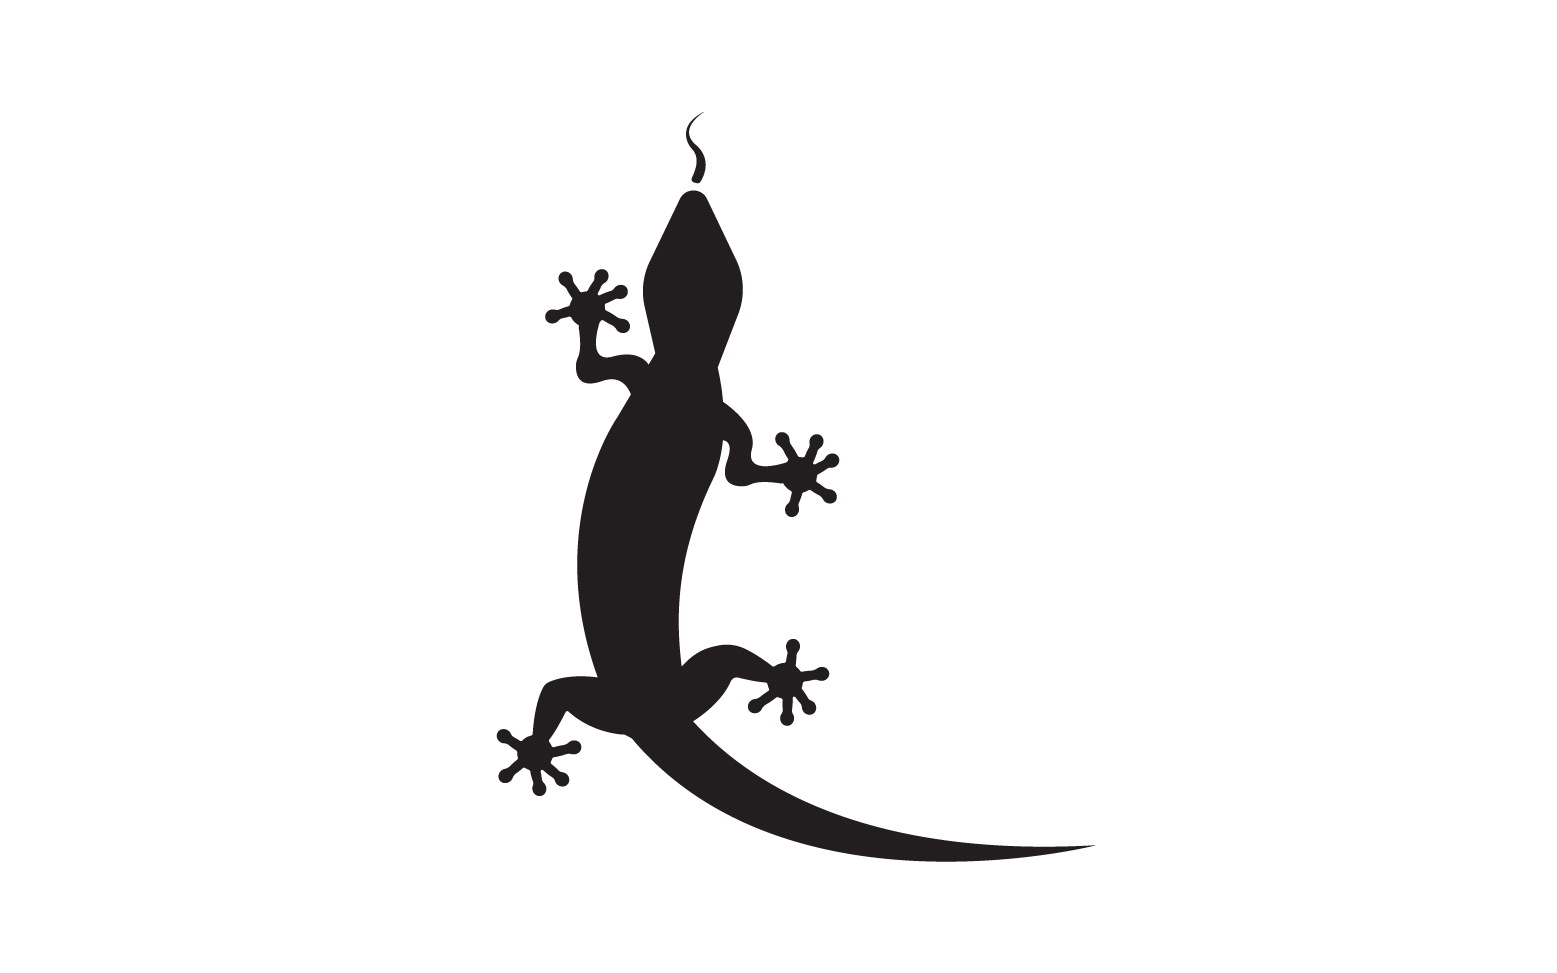 Lizard chameleon home lizard logo v40